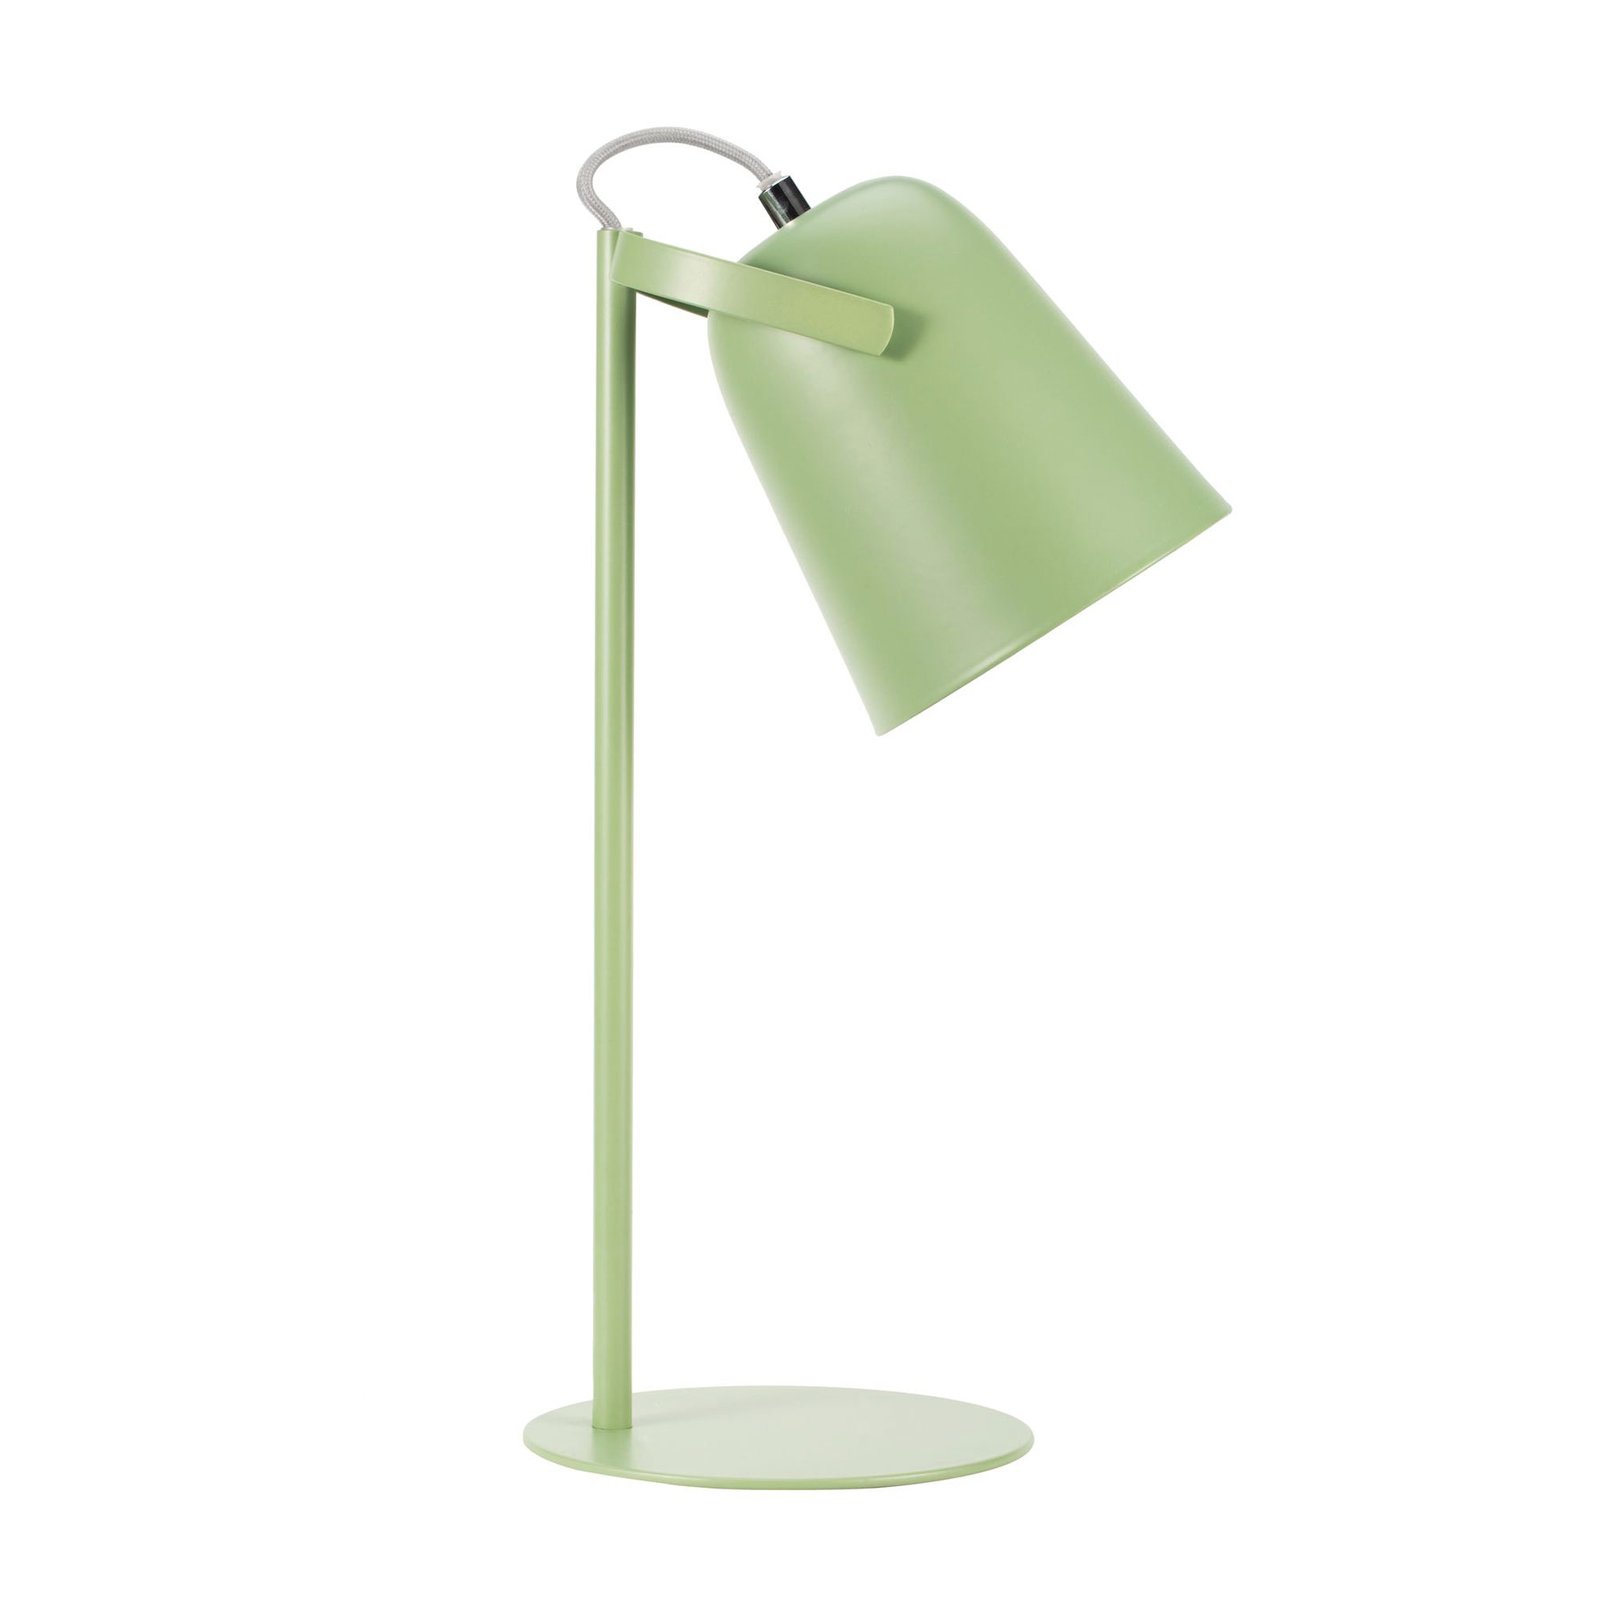 Pauleen True Pistachio stolní lampa v zelené barvě